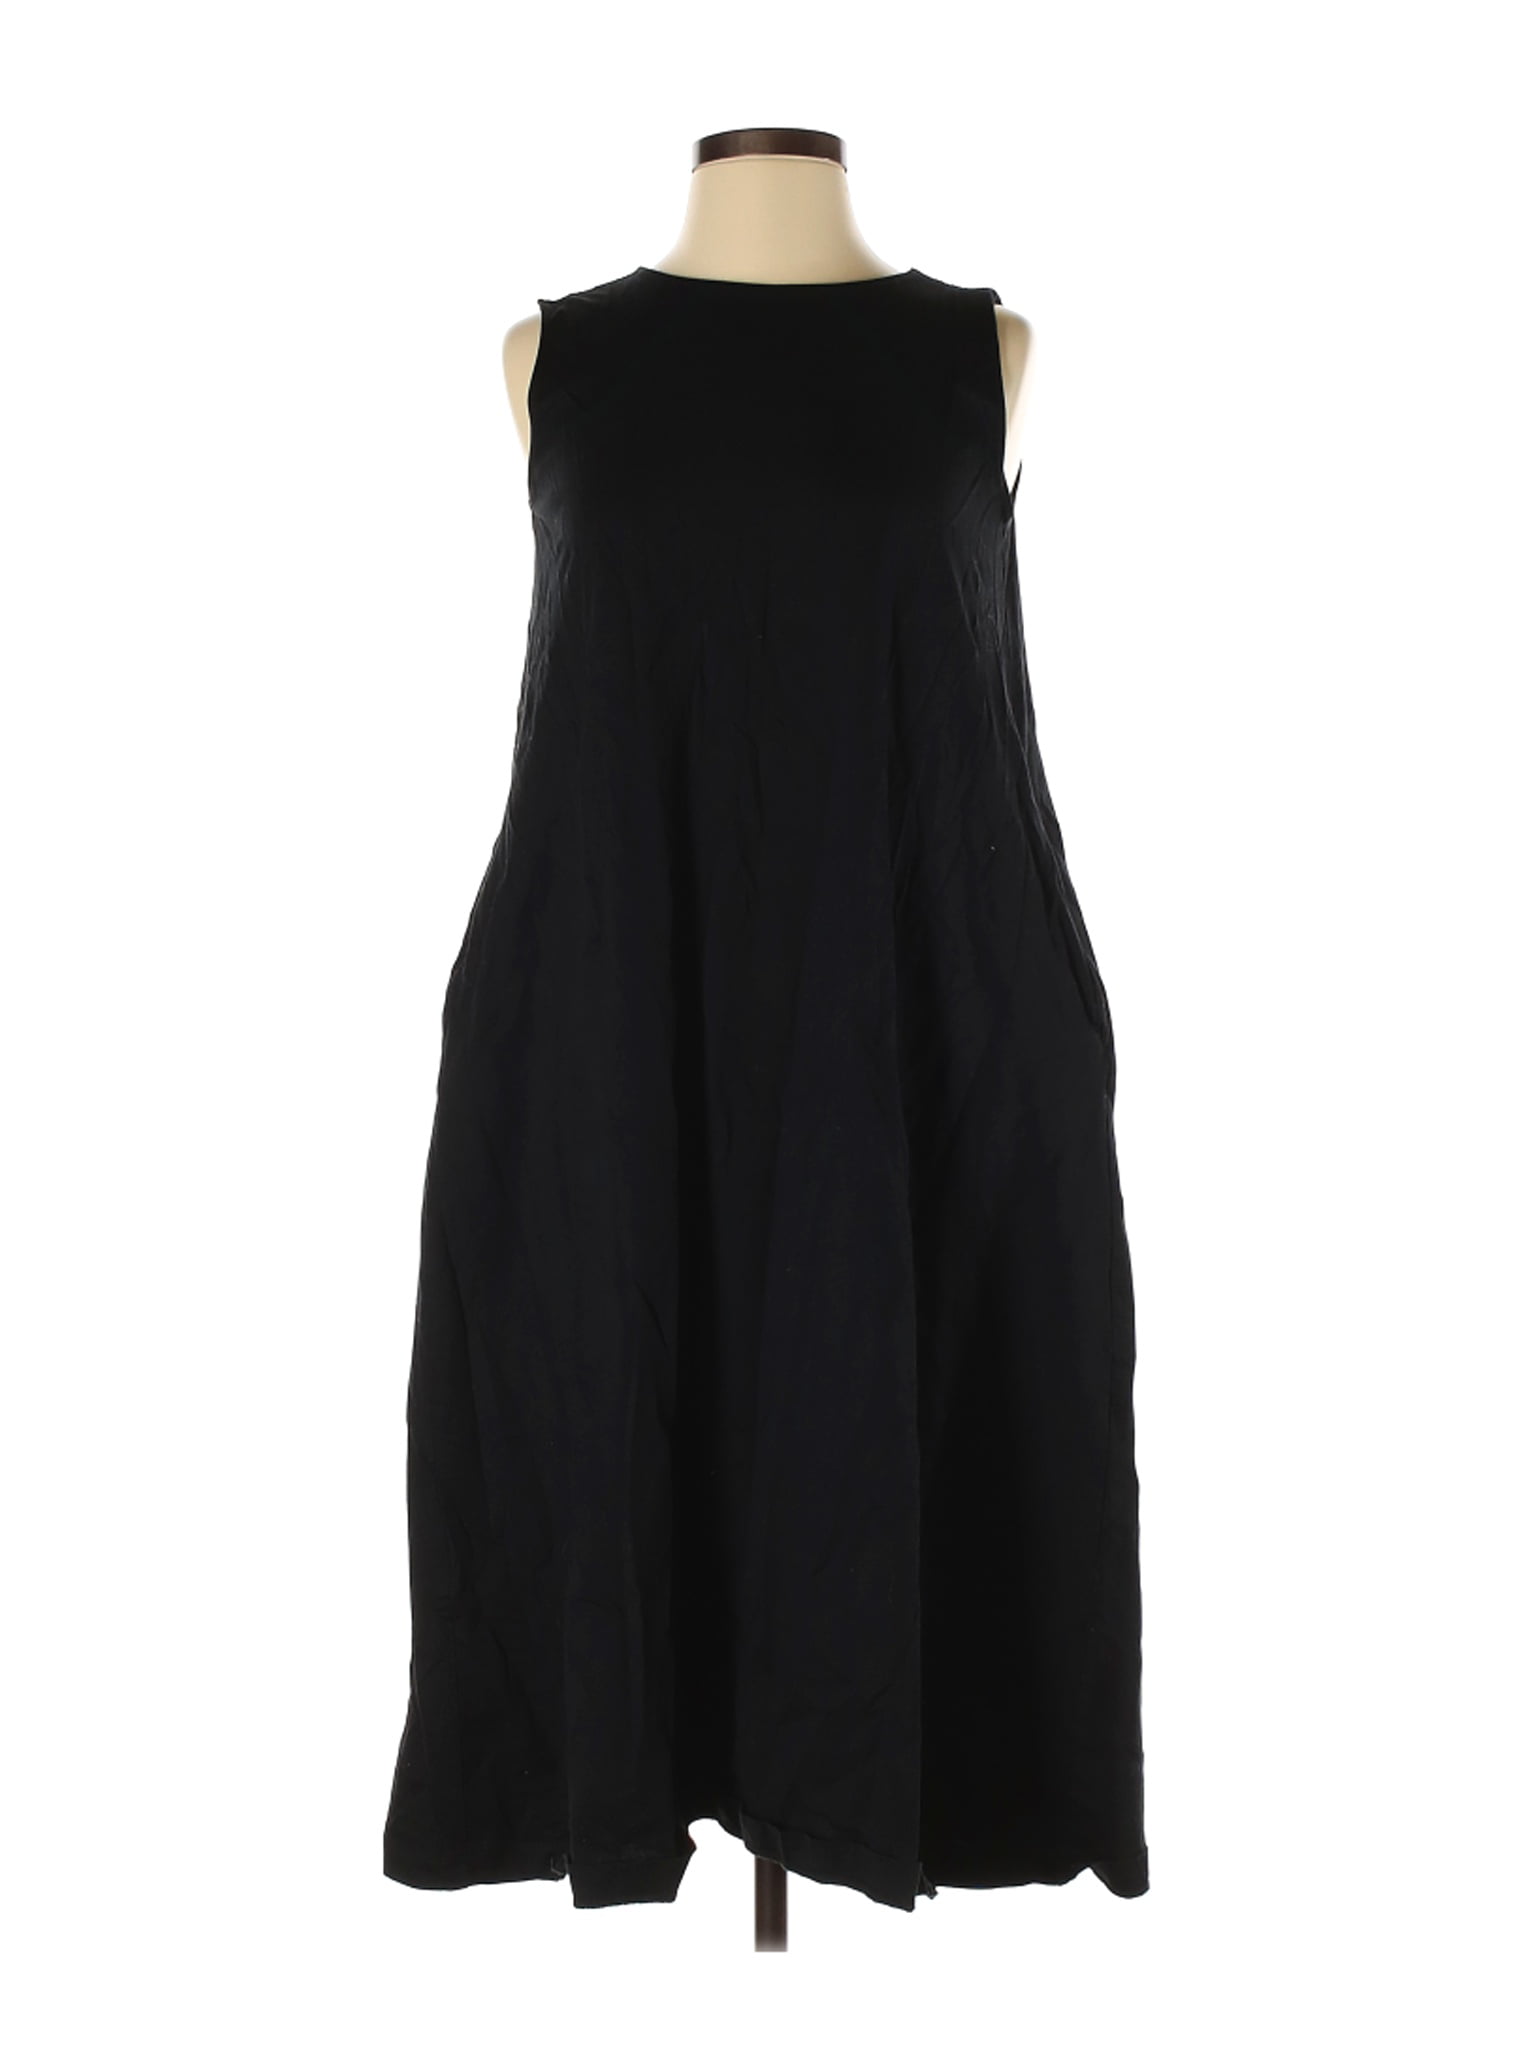 Uniqlo - Pre-Owned Uniqlo Women's Size S Casual Dress - Walmart.com ...